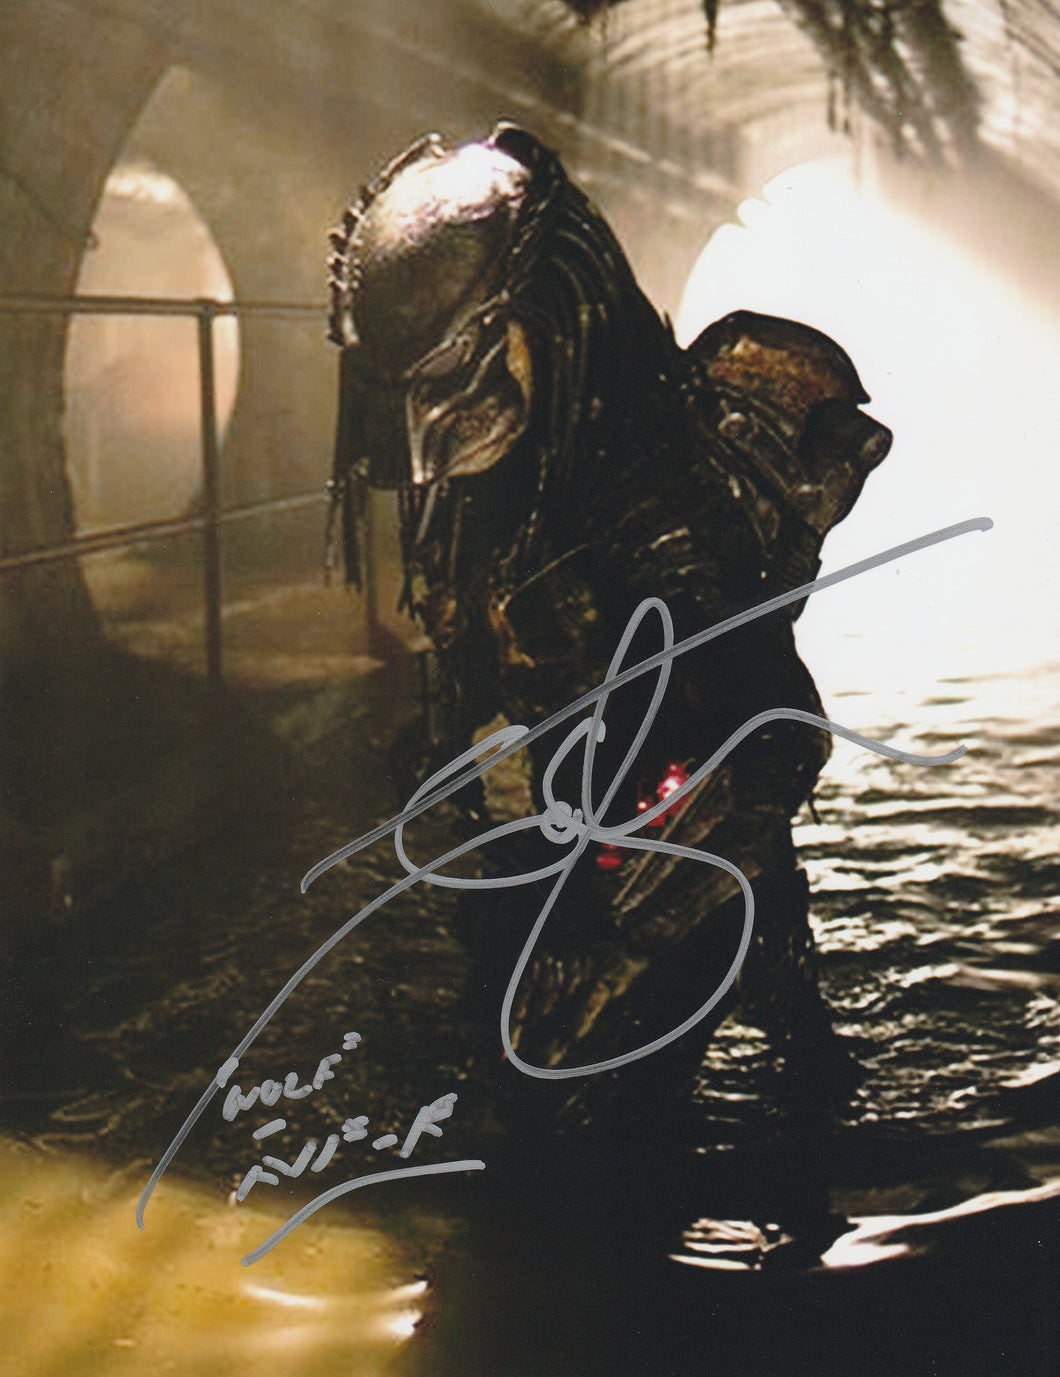 Alien Vs Predator Ian Whyte signed 8x10